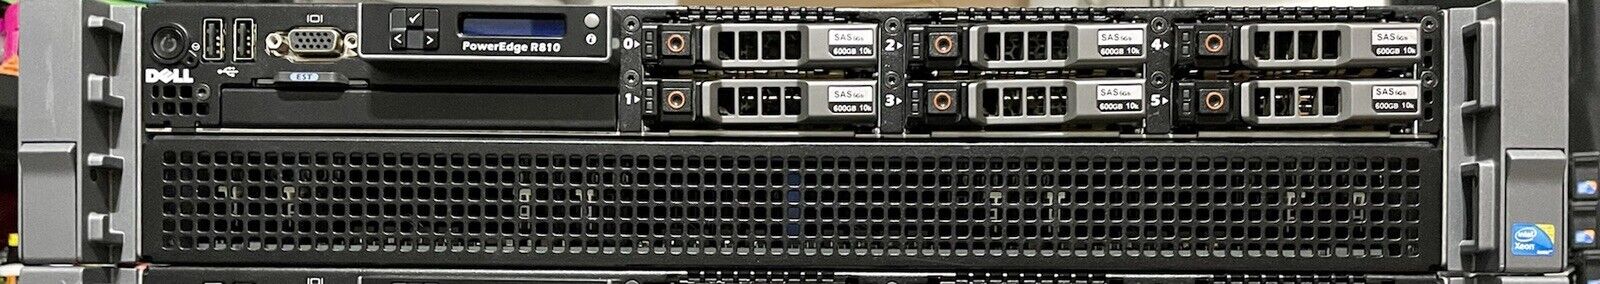 Dell Poweredge R810 Server : 4x6-Core E7540/PercH700/512GB RAM/6x600GB